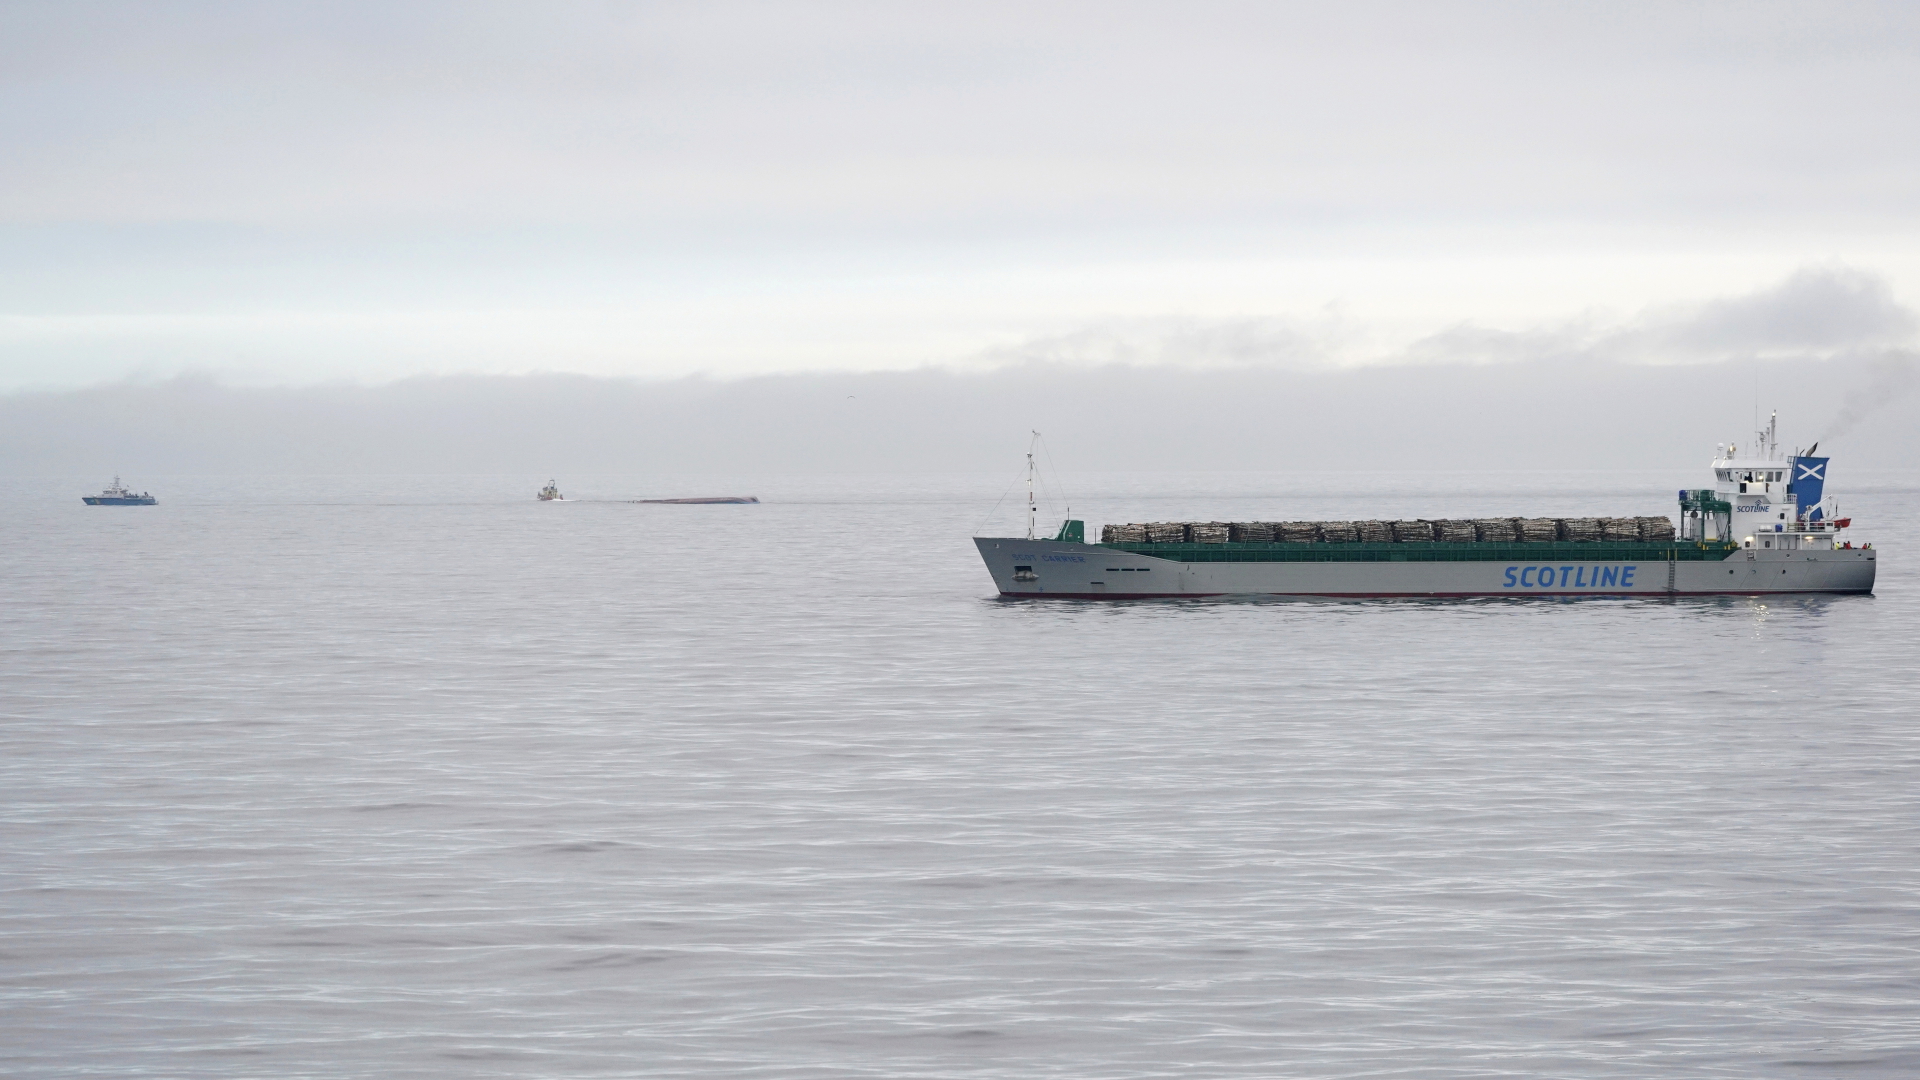 Das britische Frachtschiff in der Ostsee zwischen Ystad und der Insel Bornholm, im Hintergrund ist der mit dem Kiel nach oben liegende Frachter zu sehen.  | dpa